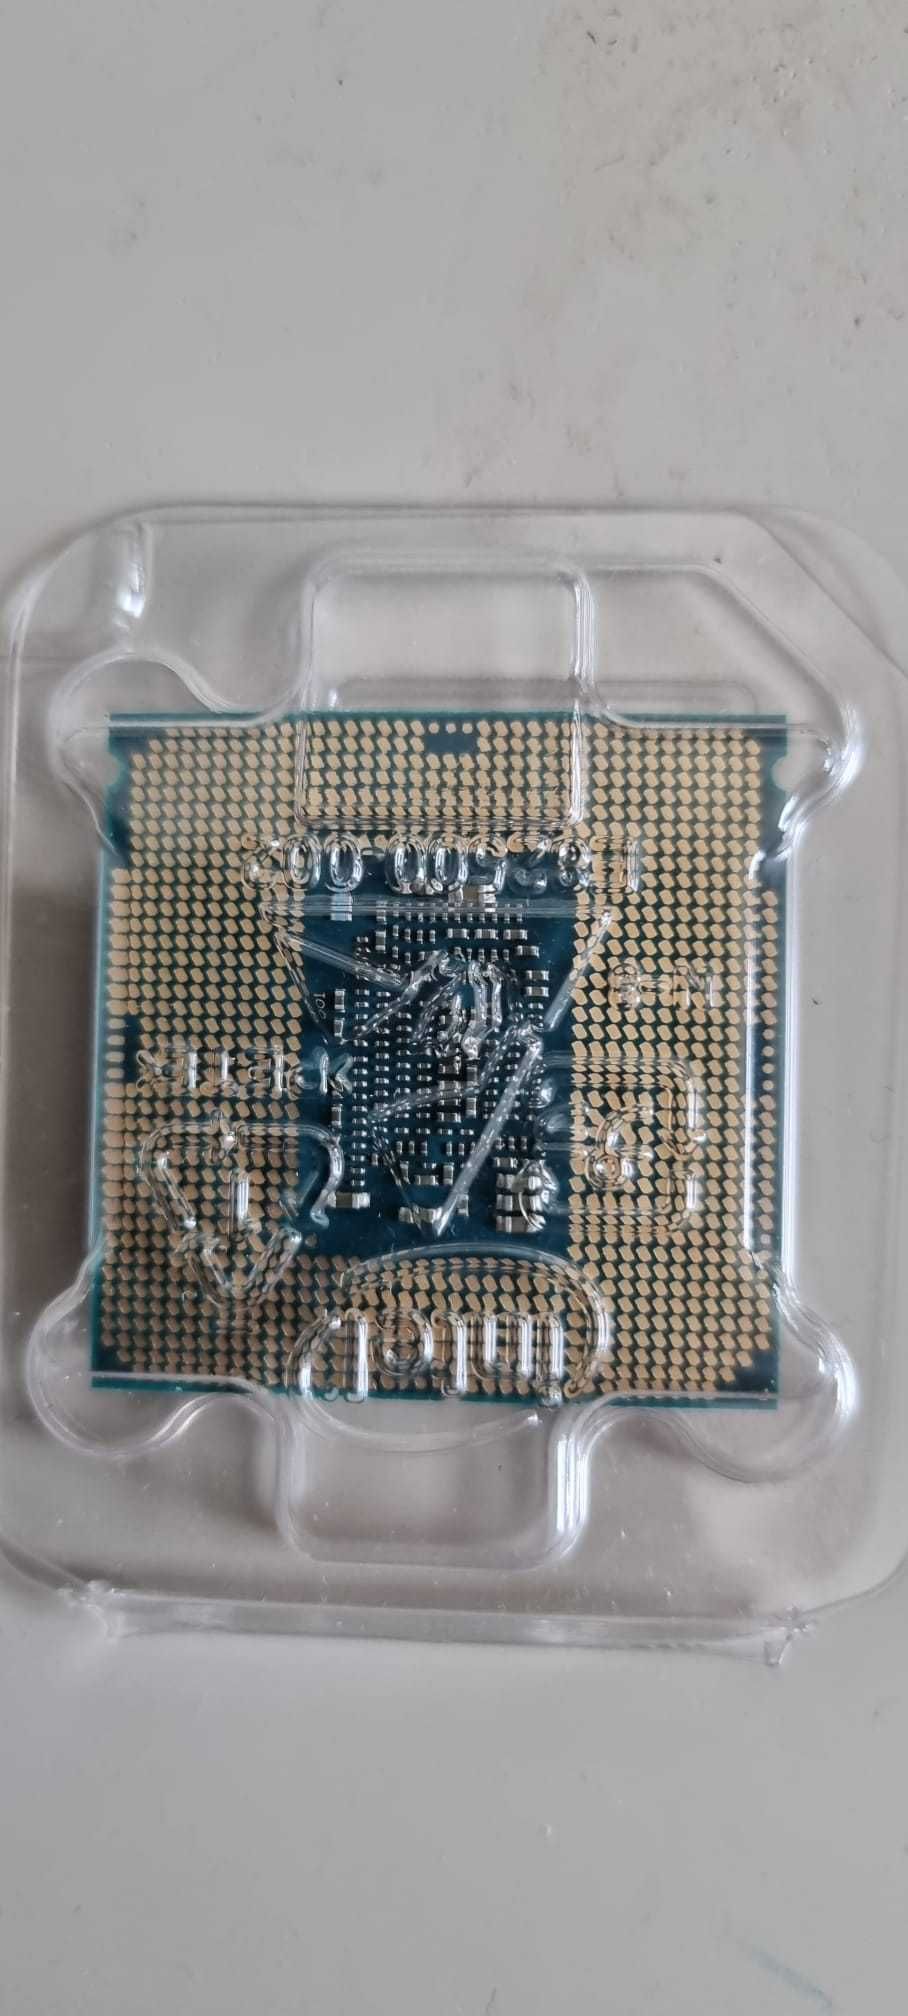 Procesor Intel i5-7600k 3.80GHz 6MB 4 rdzenie